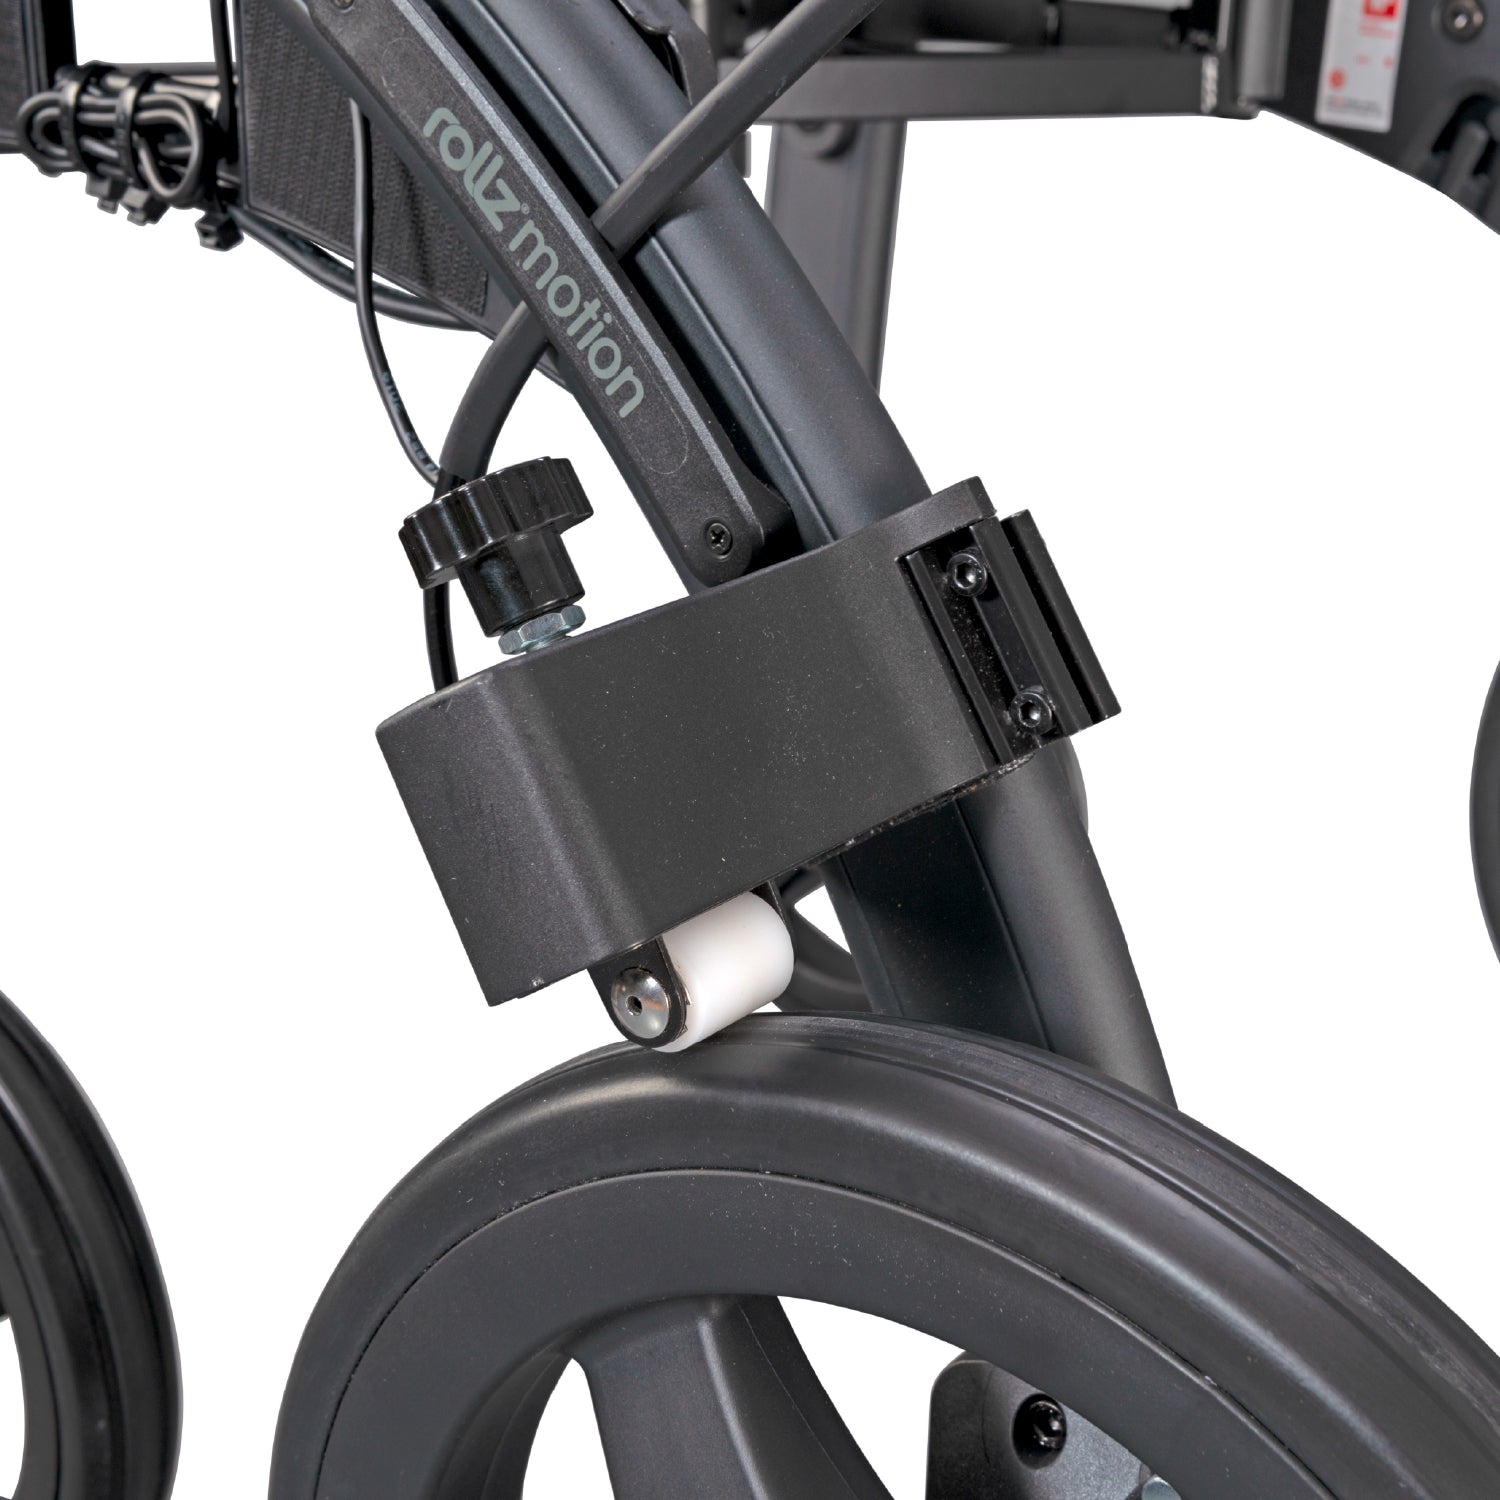 Rollz Motion Rollator Walker Accessories - Slow Down Brakes